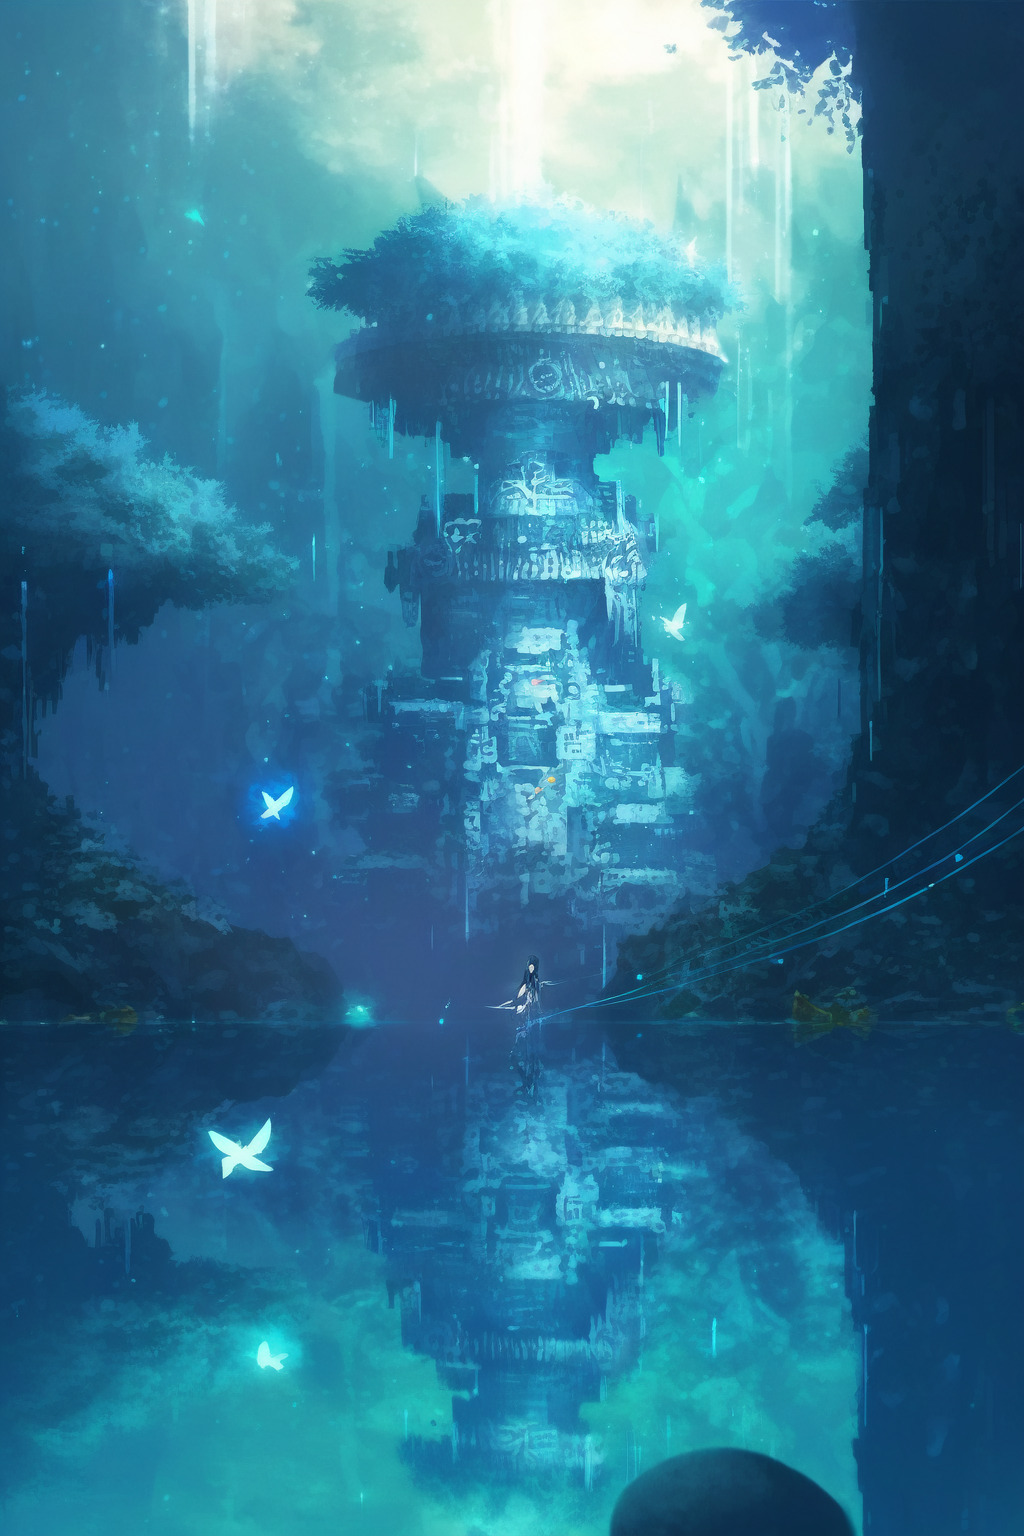 Аватар: путь воды аниме